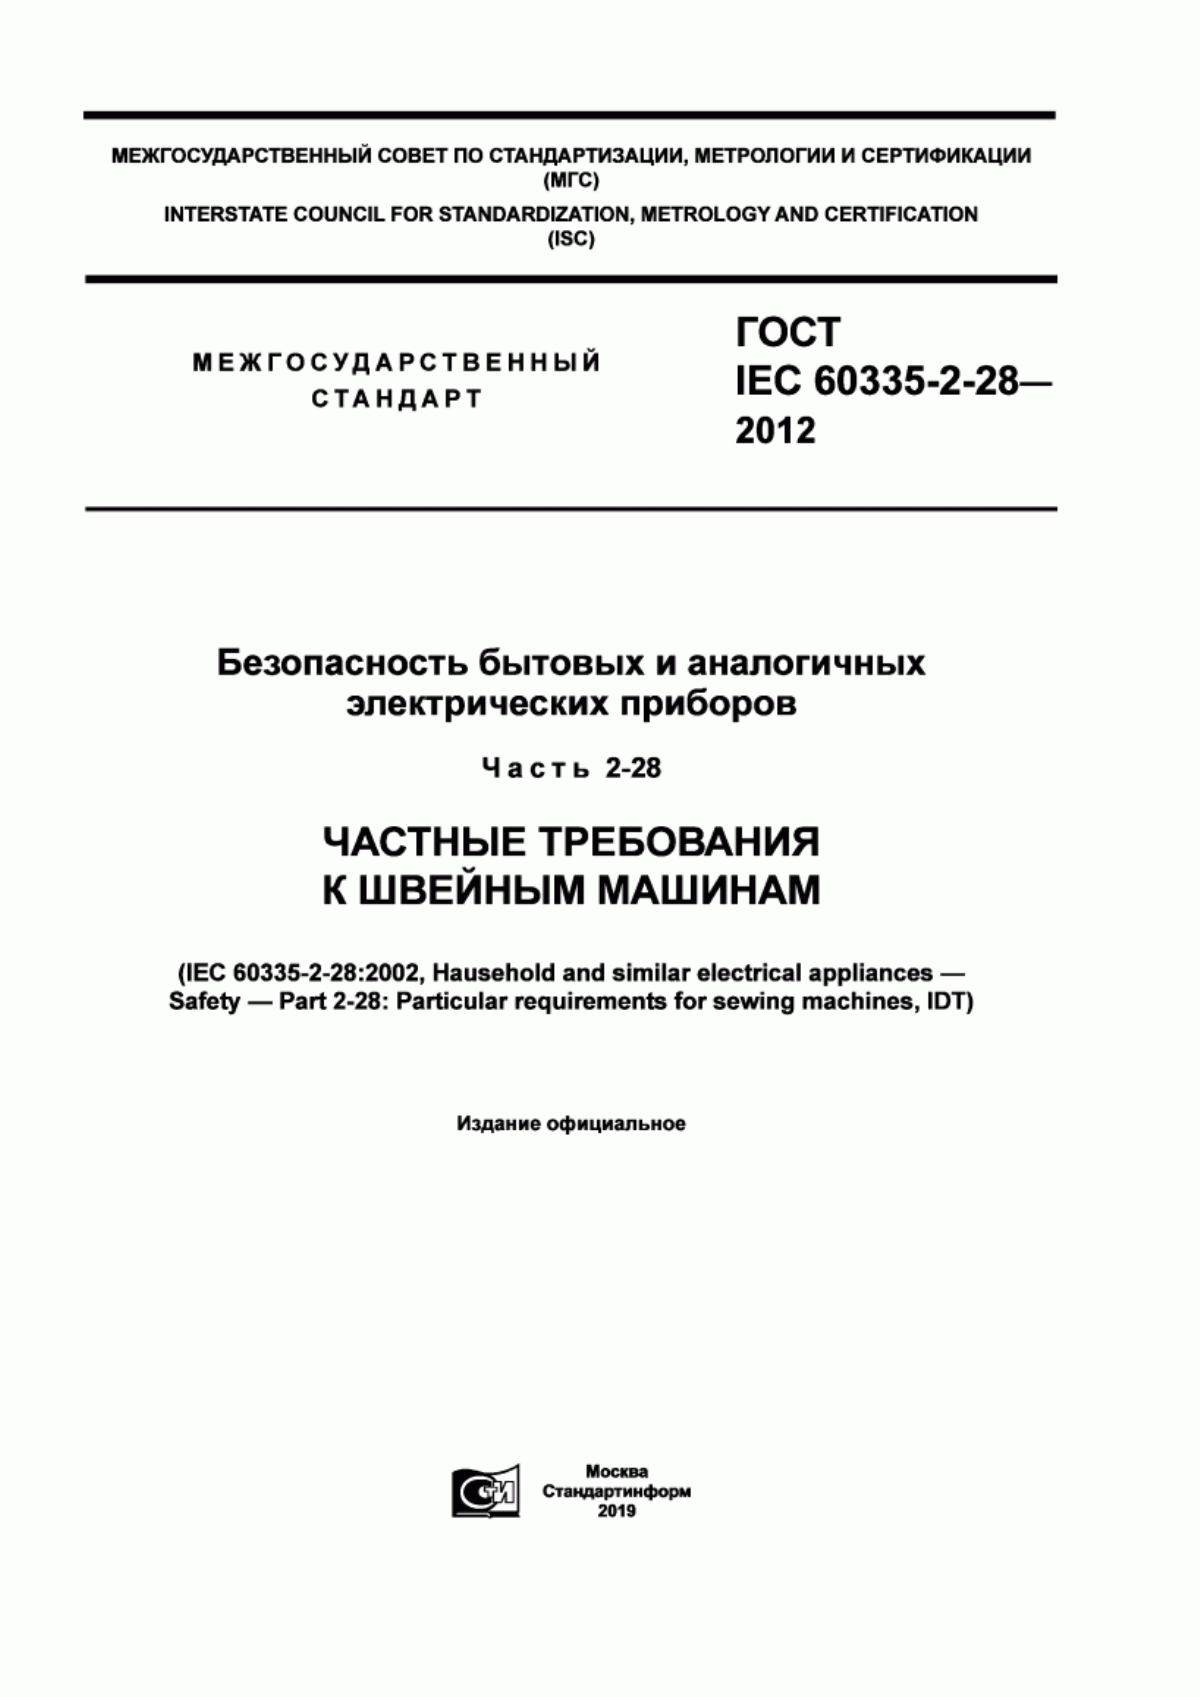 ГОСТ IEC 60335-2-28-2012 Безопасность бытовых и аналогичных электрических приборов. Часть 2-28. Частные требования к швейным машинам